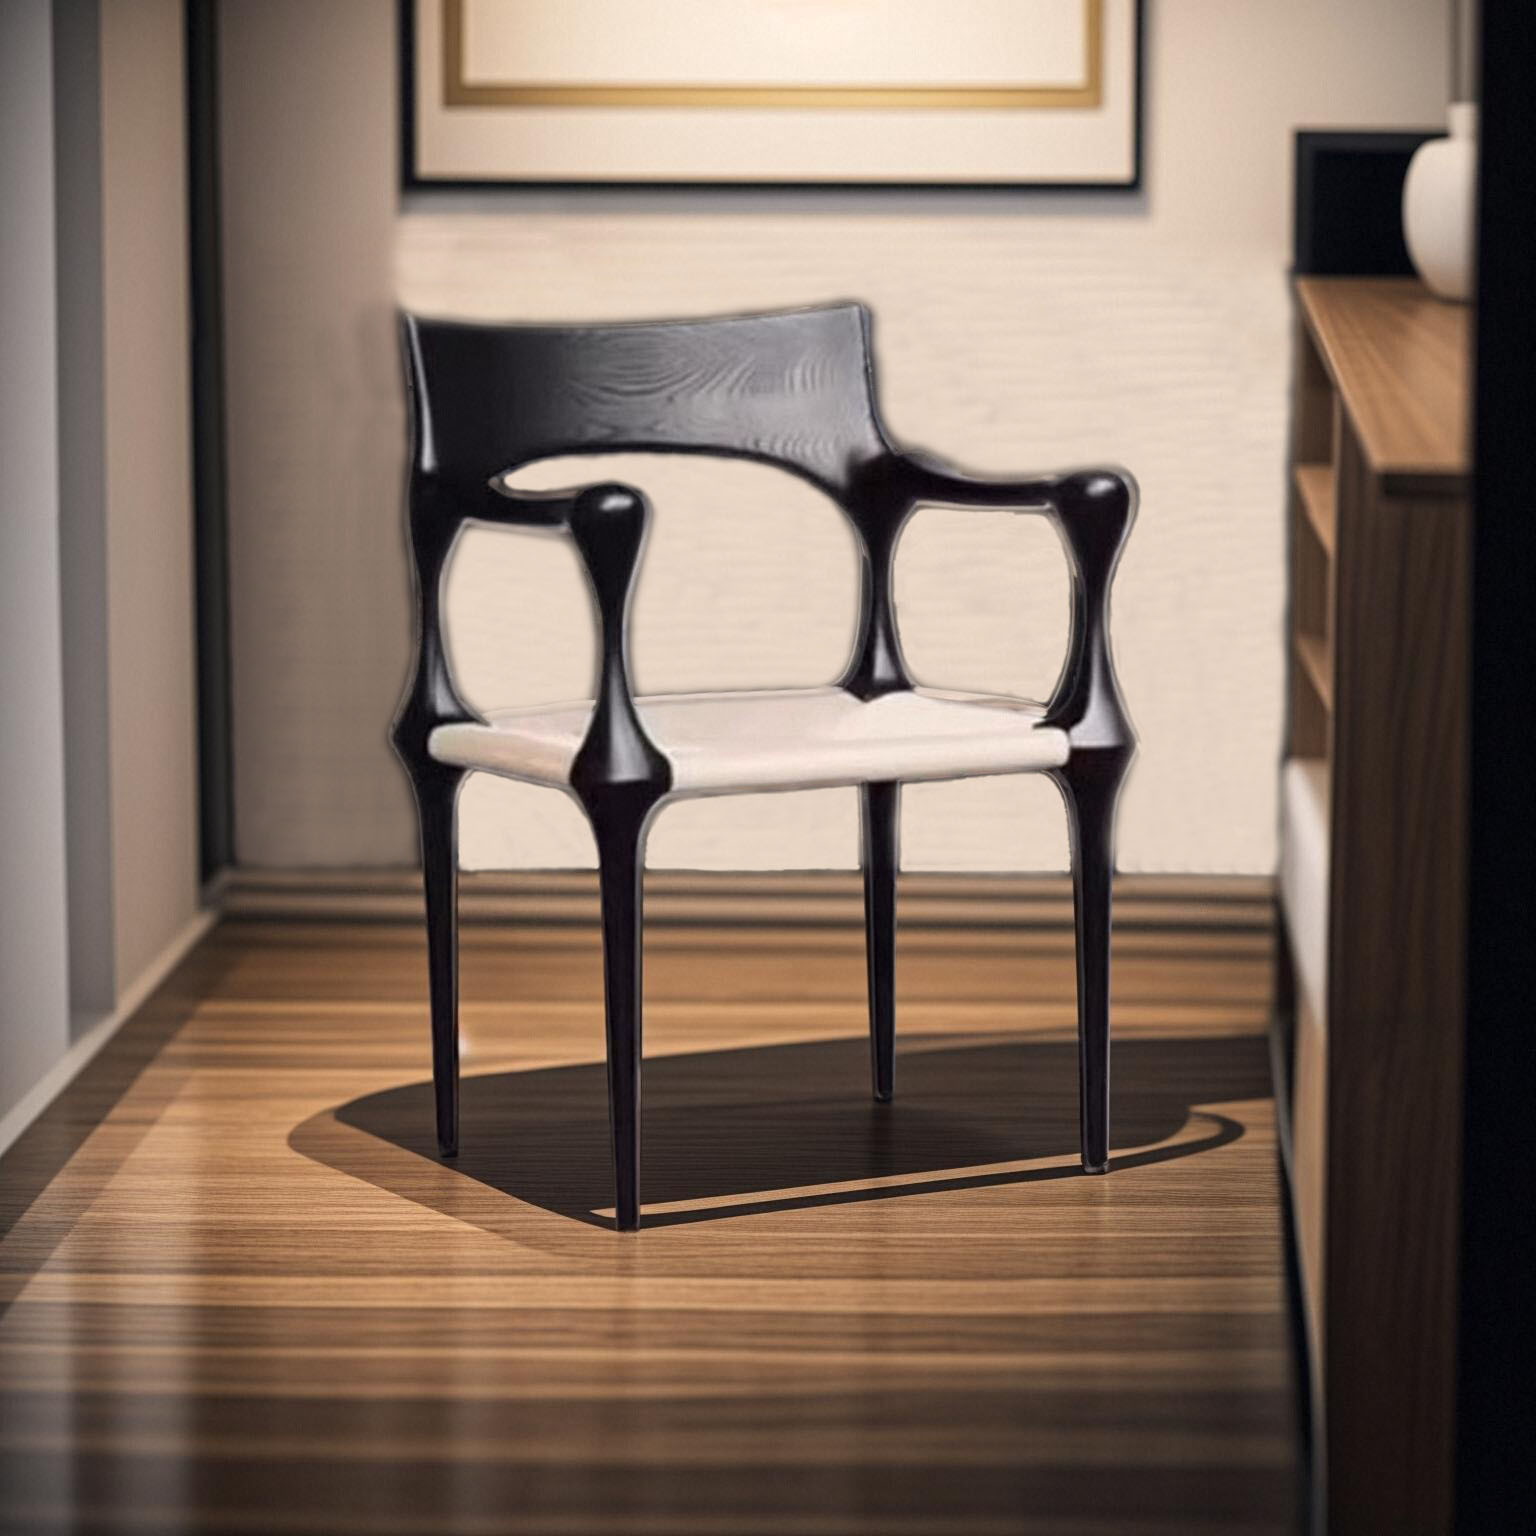 中古风实木复古餐椅高背创意休闲单人椅设计师藤编黑色白蜡木餐椅